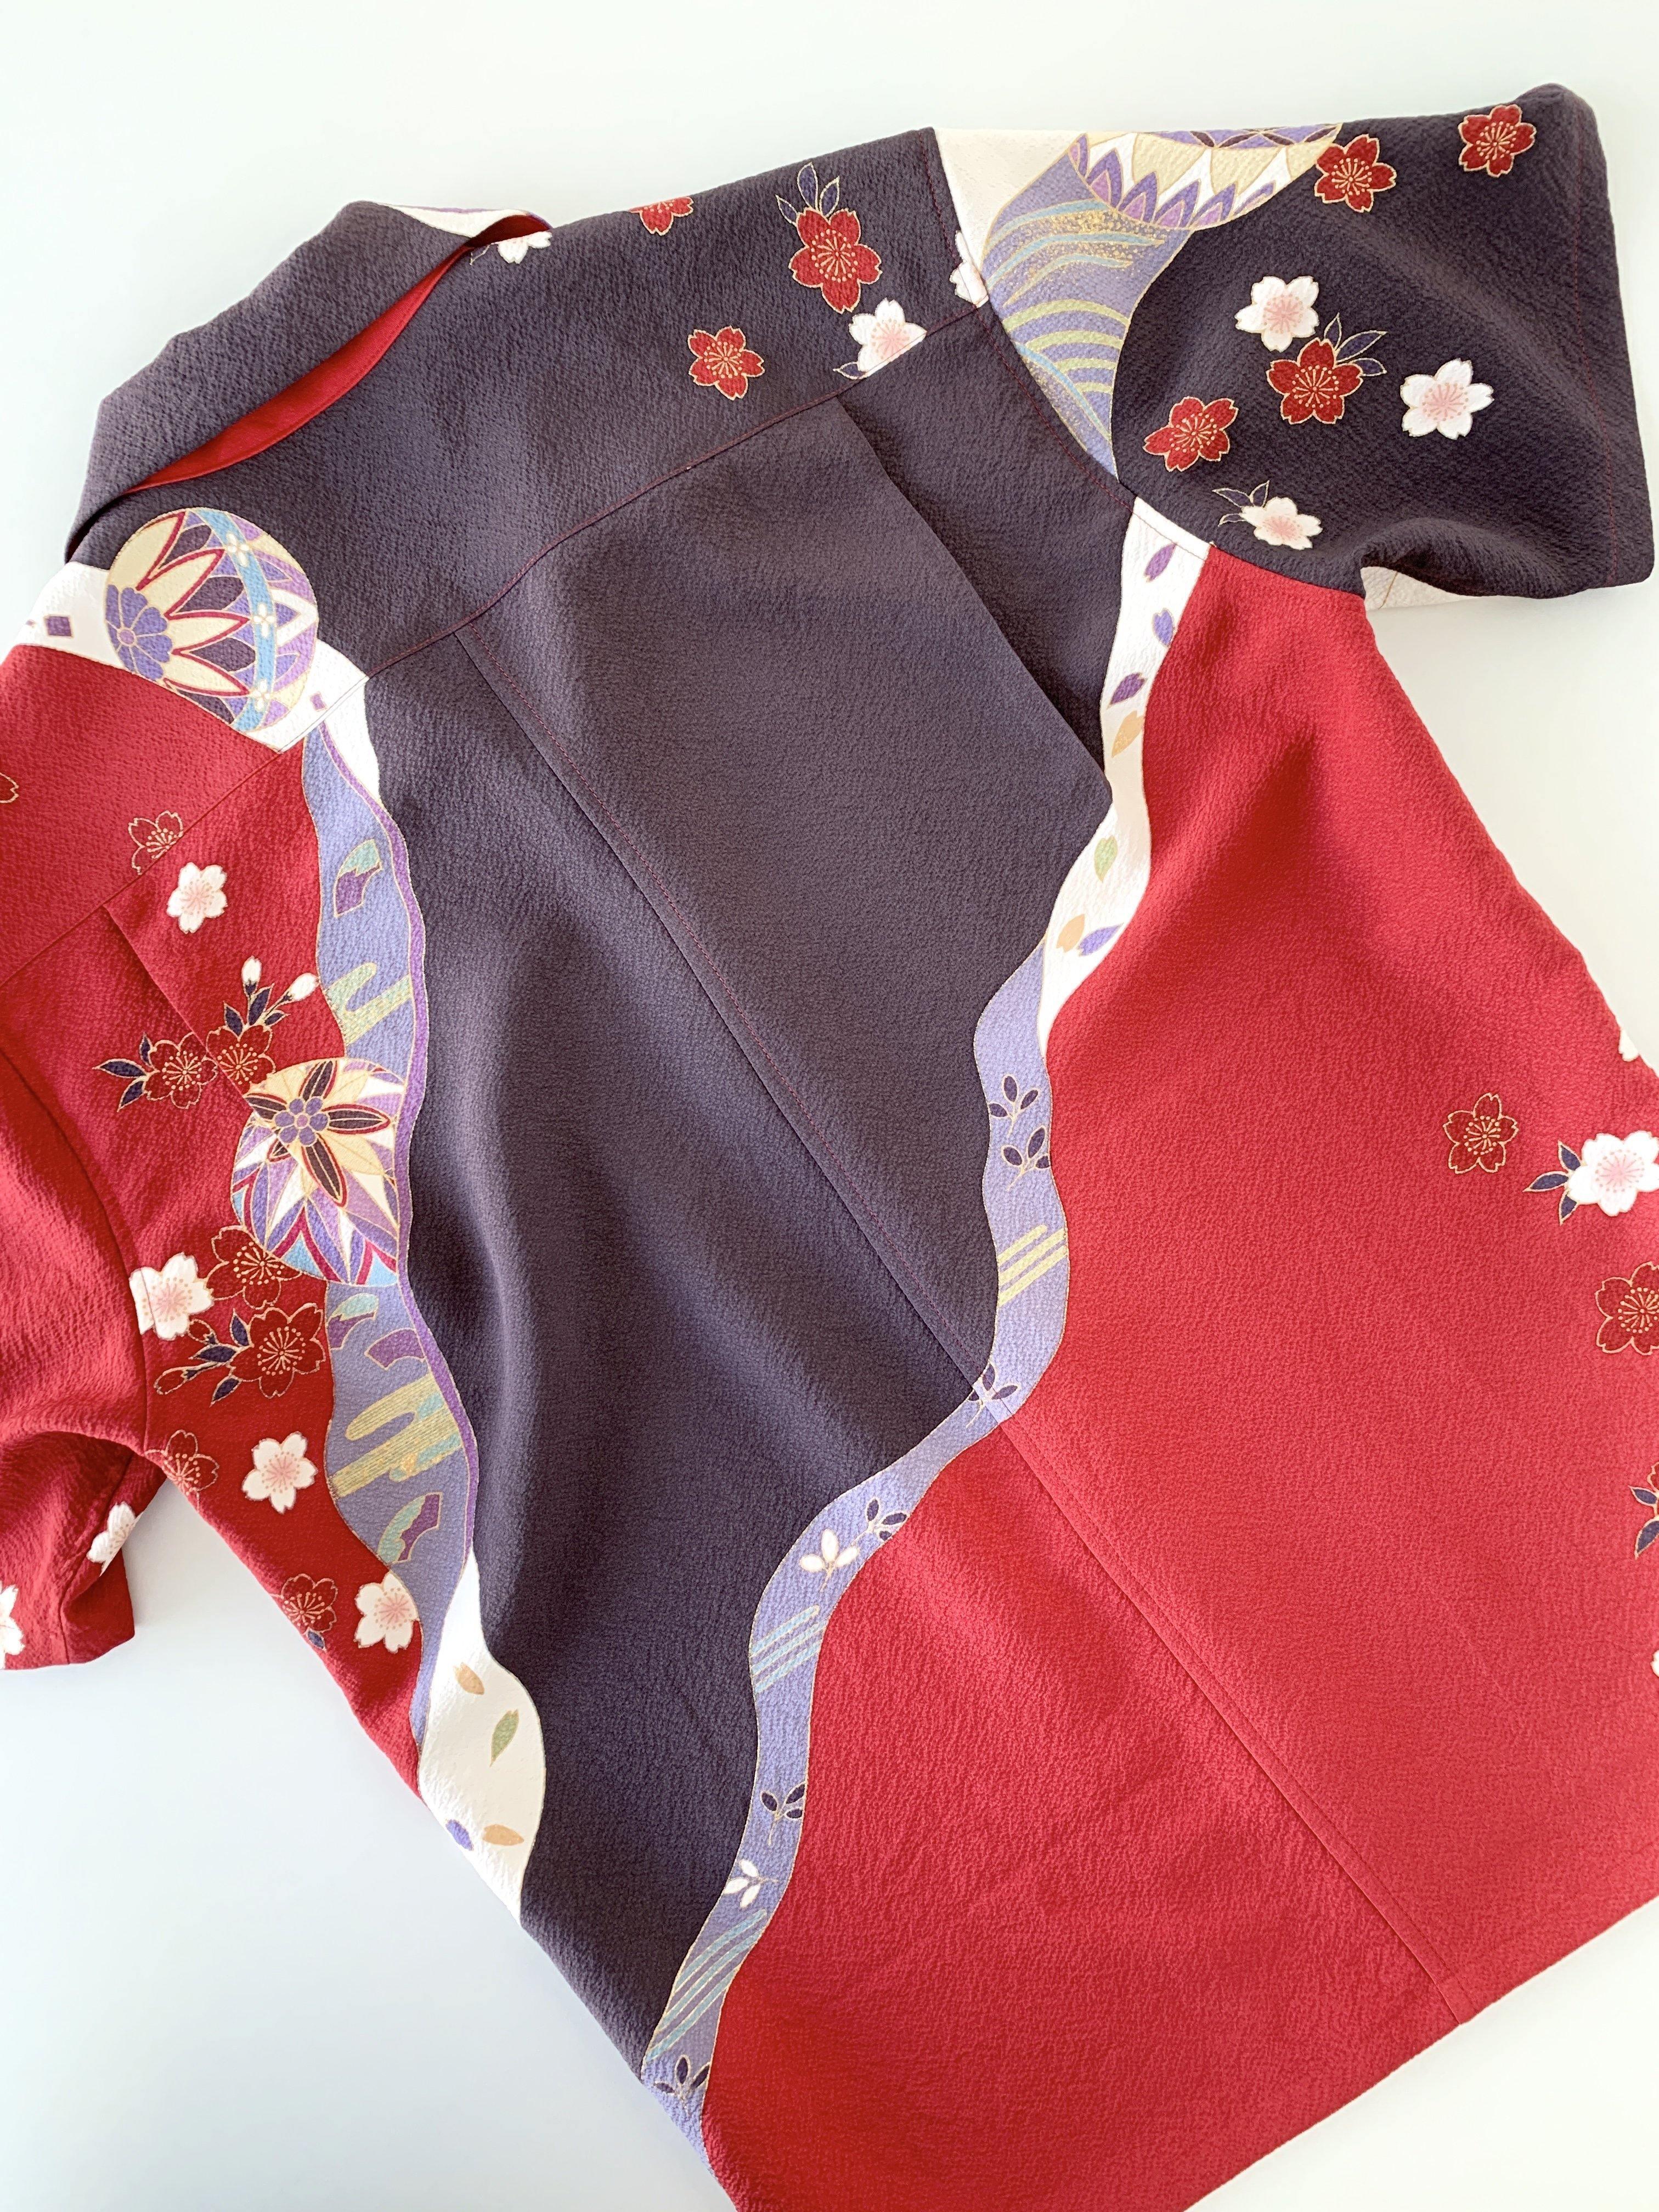 着物アロハ「桜に御所車」AH100033 - 着物アロハシャツ専門店｜KIMONO-CYCLE